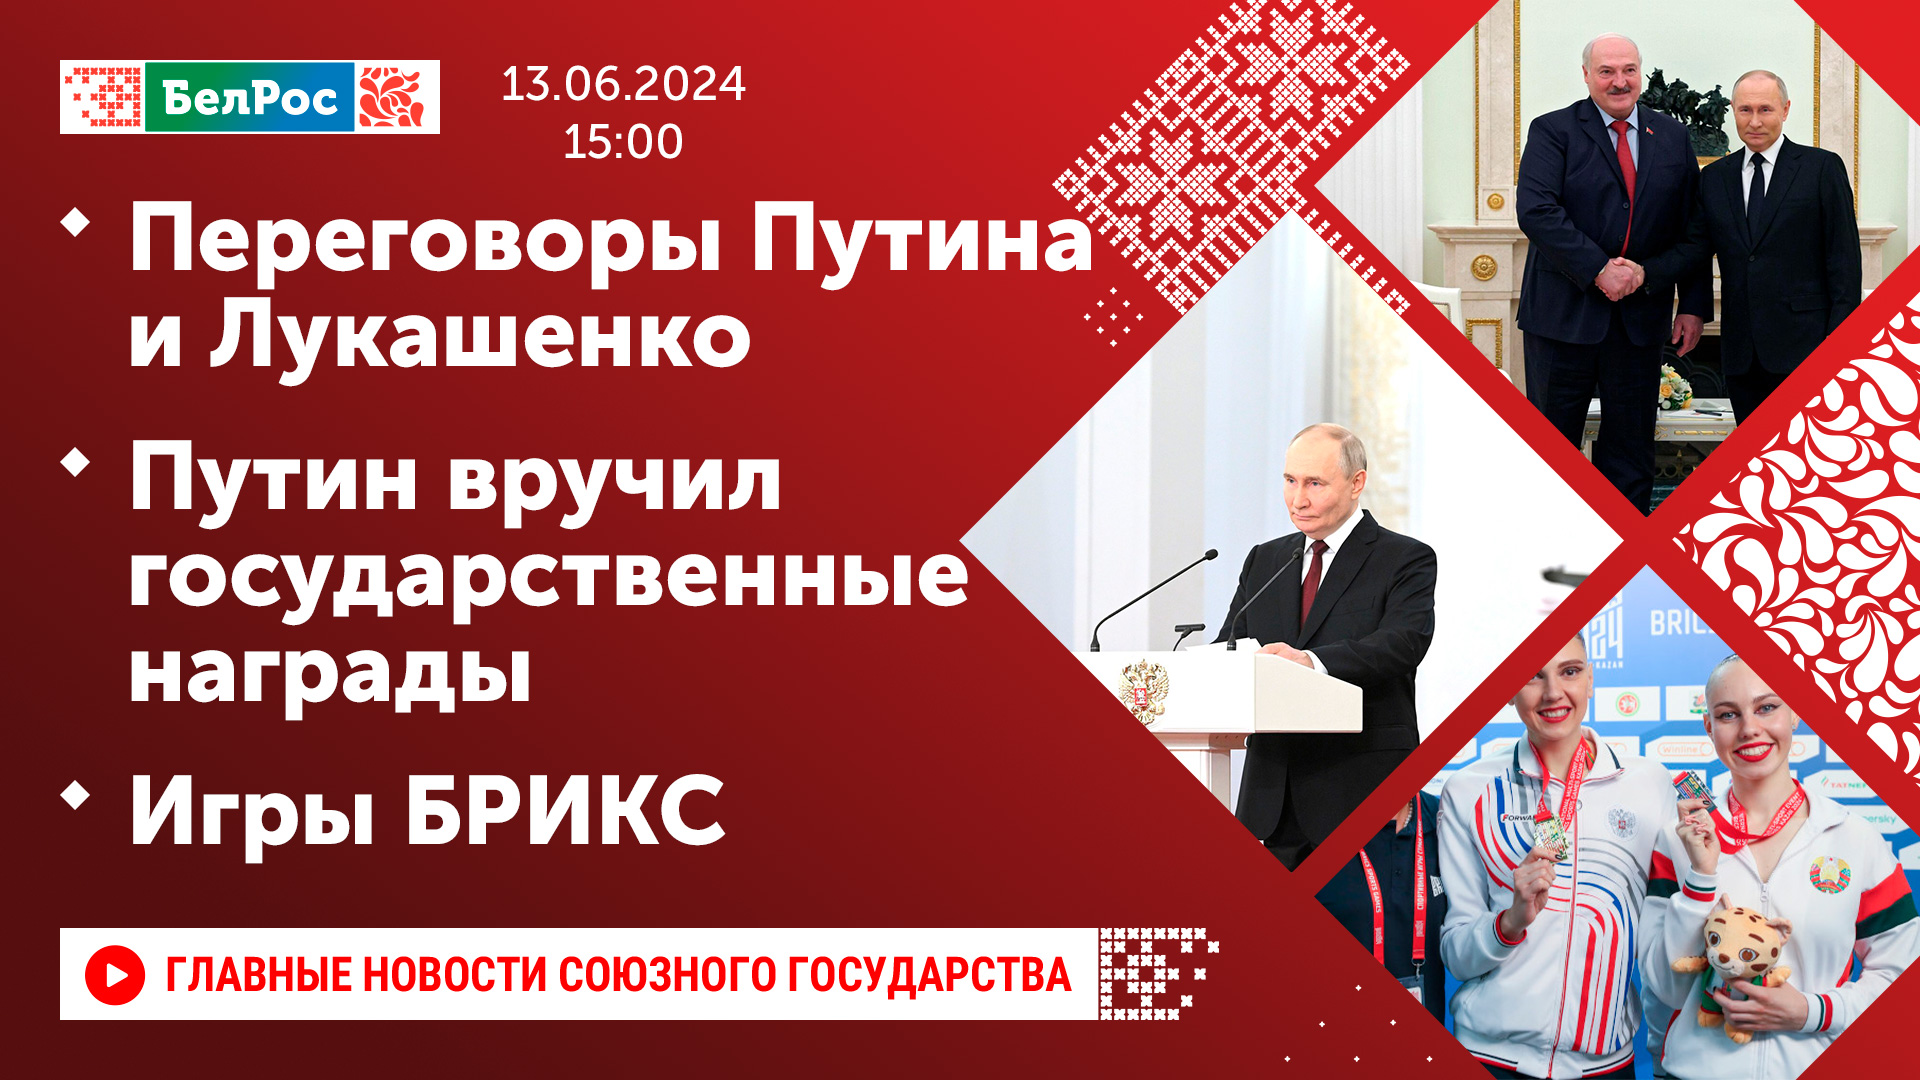 Переговоры Путина и Лукашенко / Путин вручил государственные награды /  Игры БРИКС